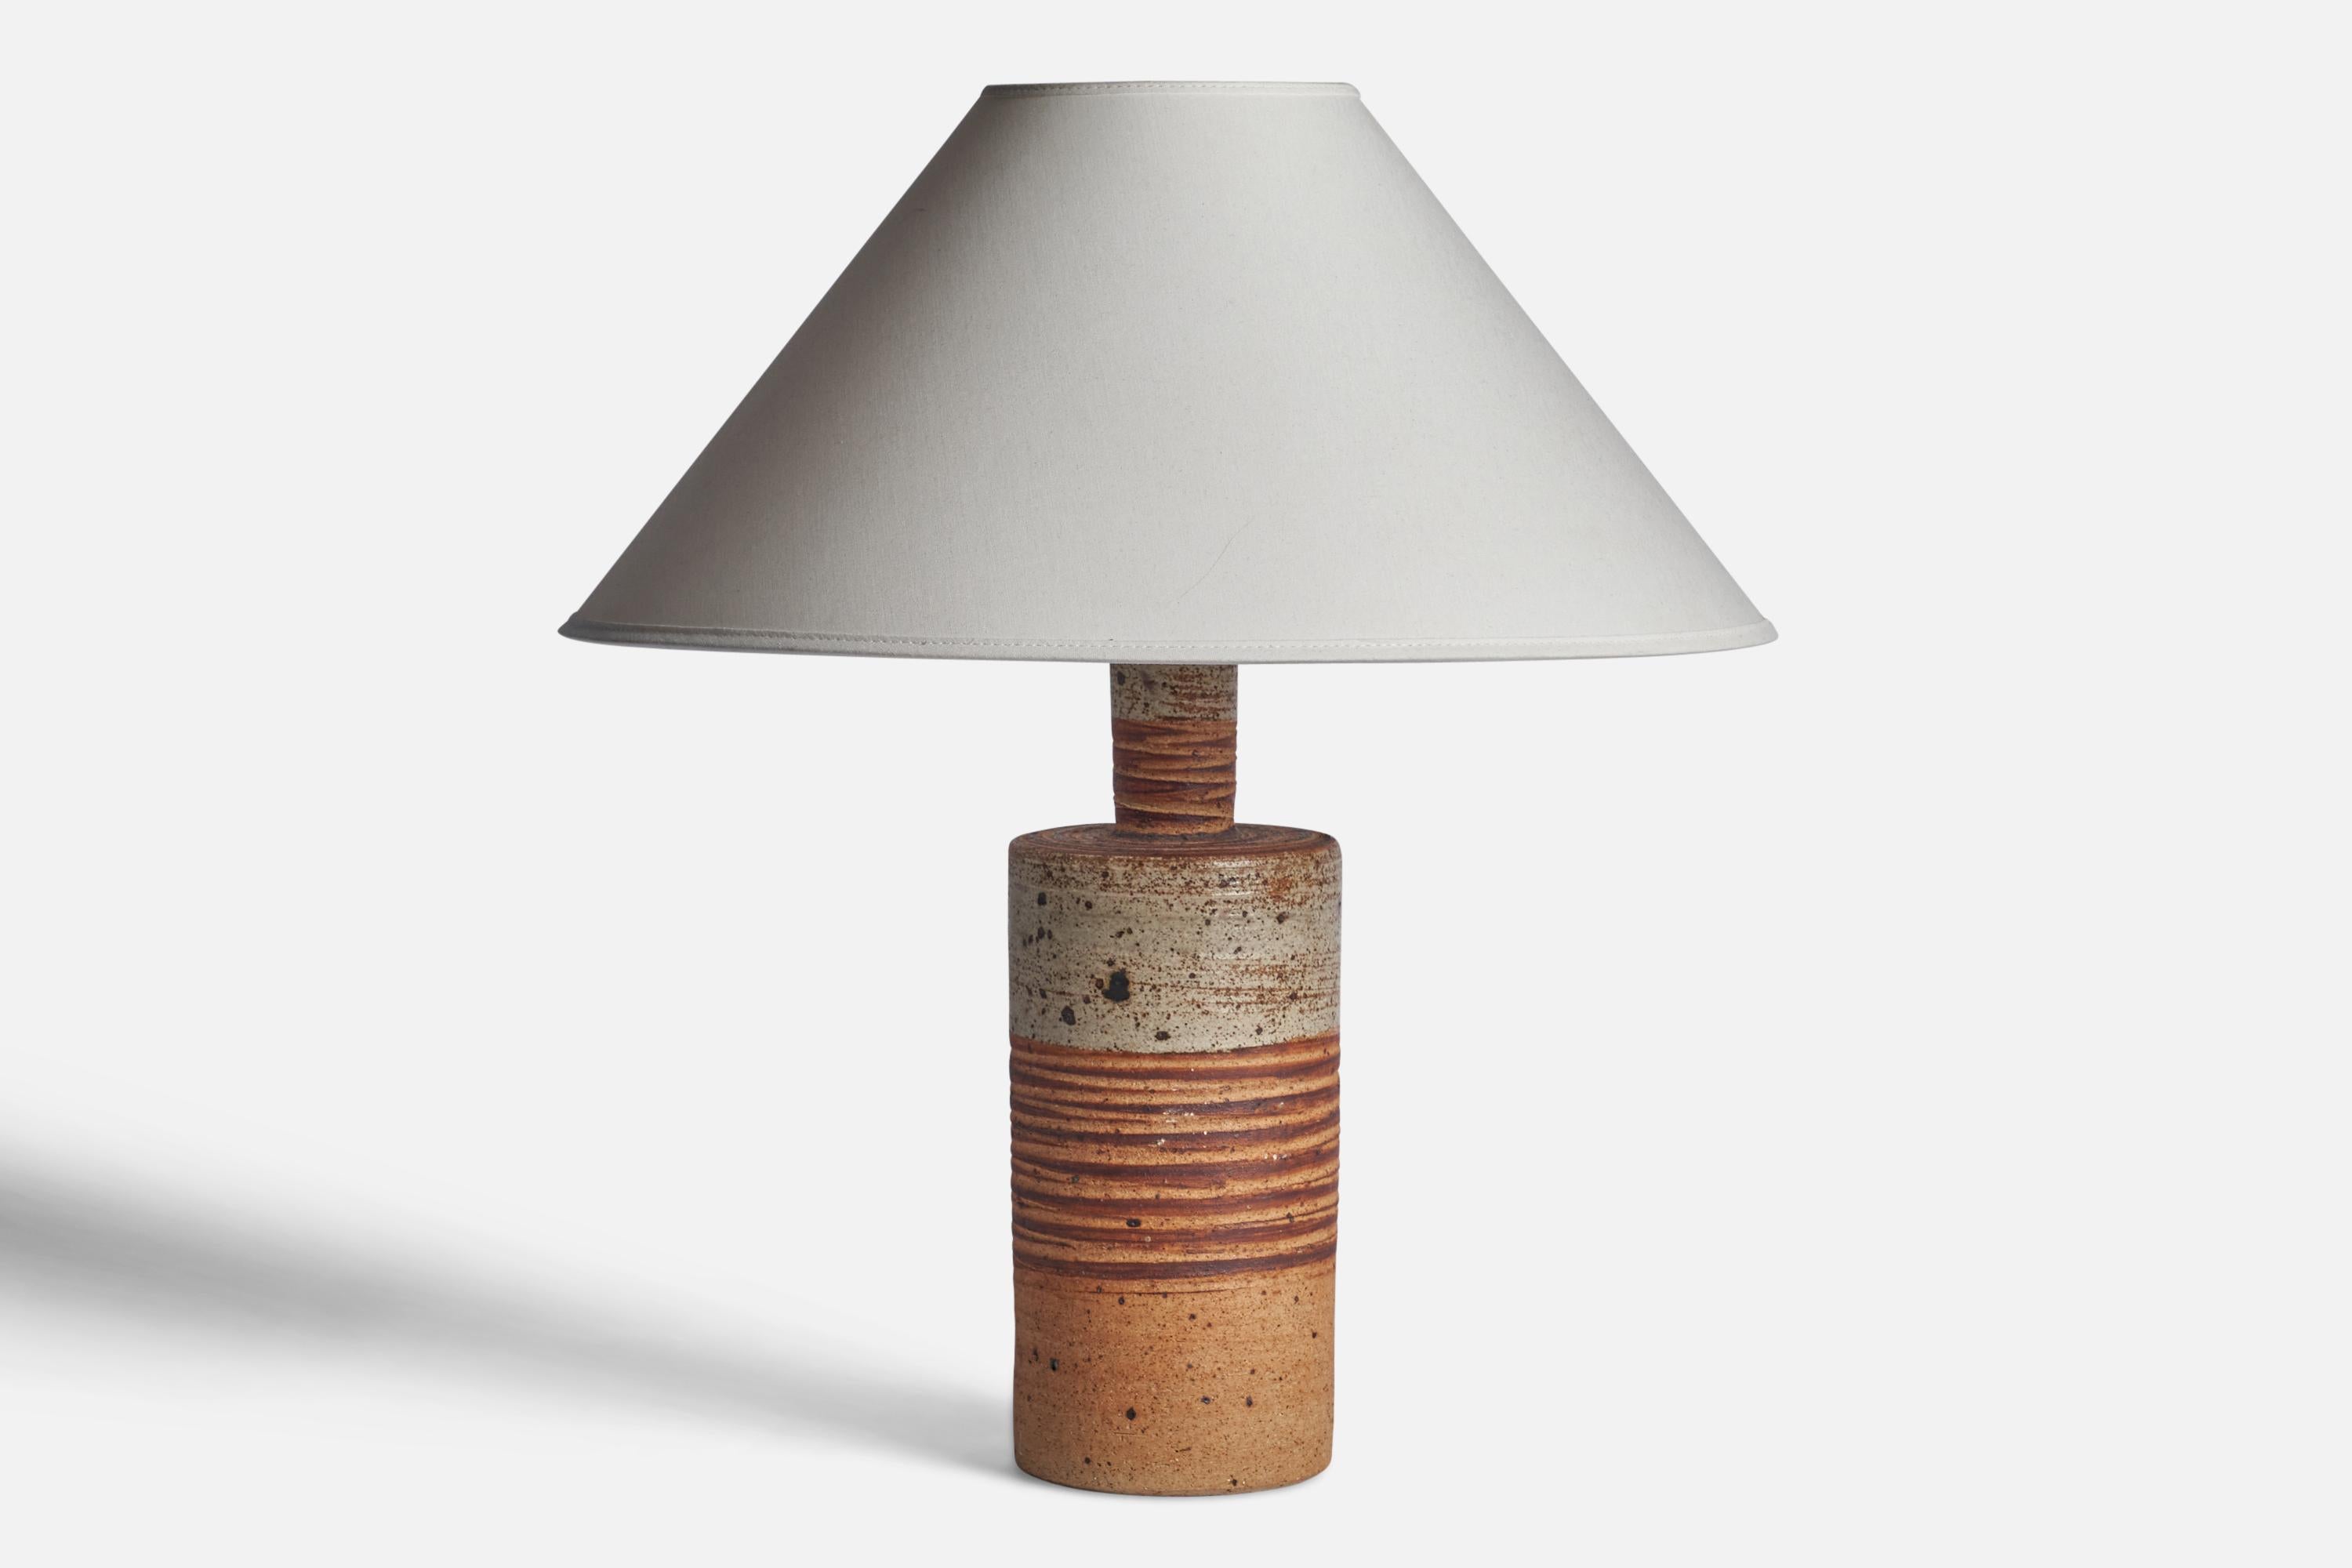 Lampe de table en grès émaillé gris et orange, conçue et produite par Tue Poulsen, Danemark, années 1960.

Dimensions de la lampe (pouces) : 13.85